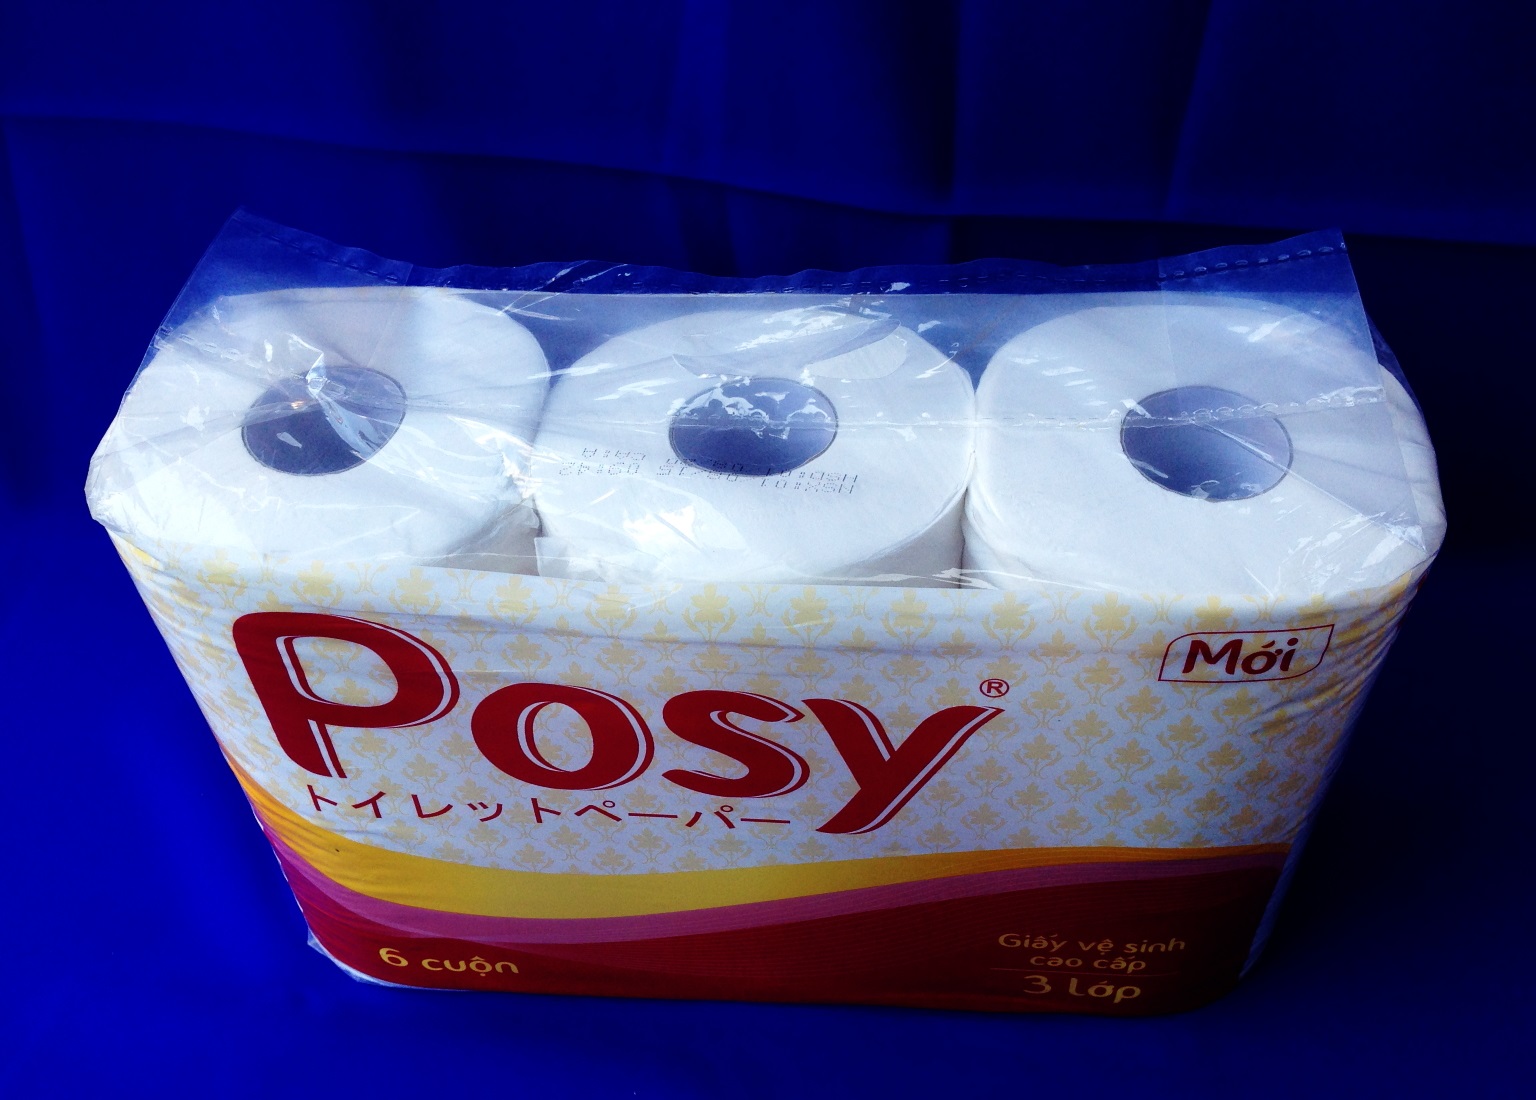 Giấy vệ sinh Posy premium 3 lớp, 6 cuộn/ túi